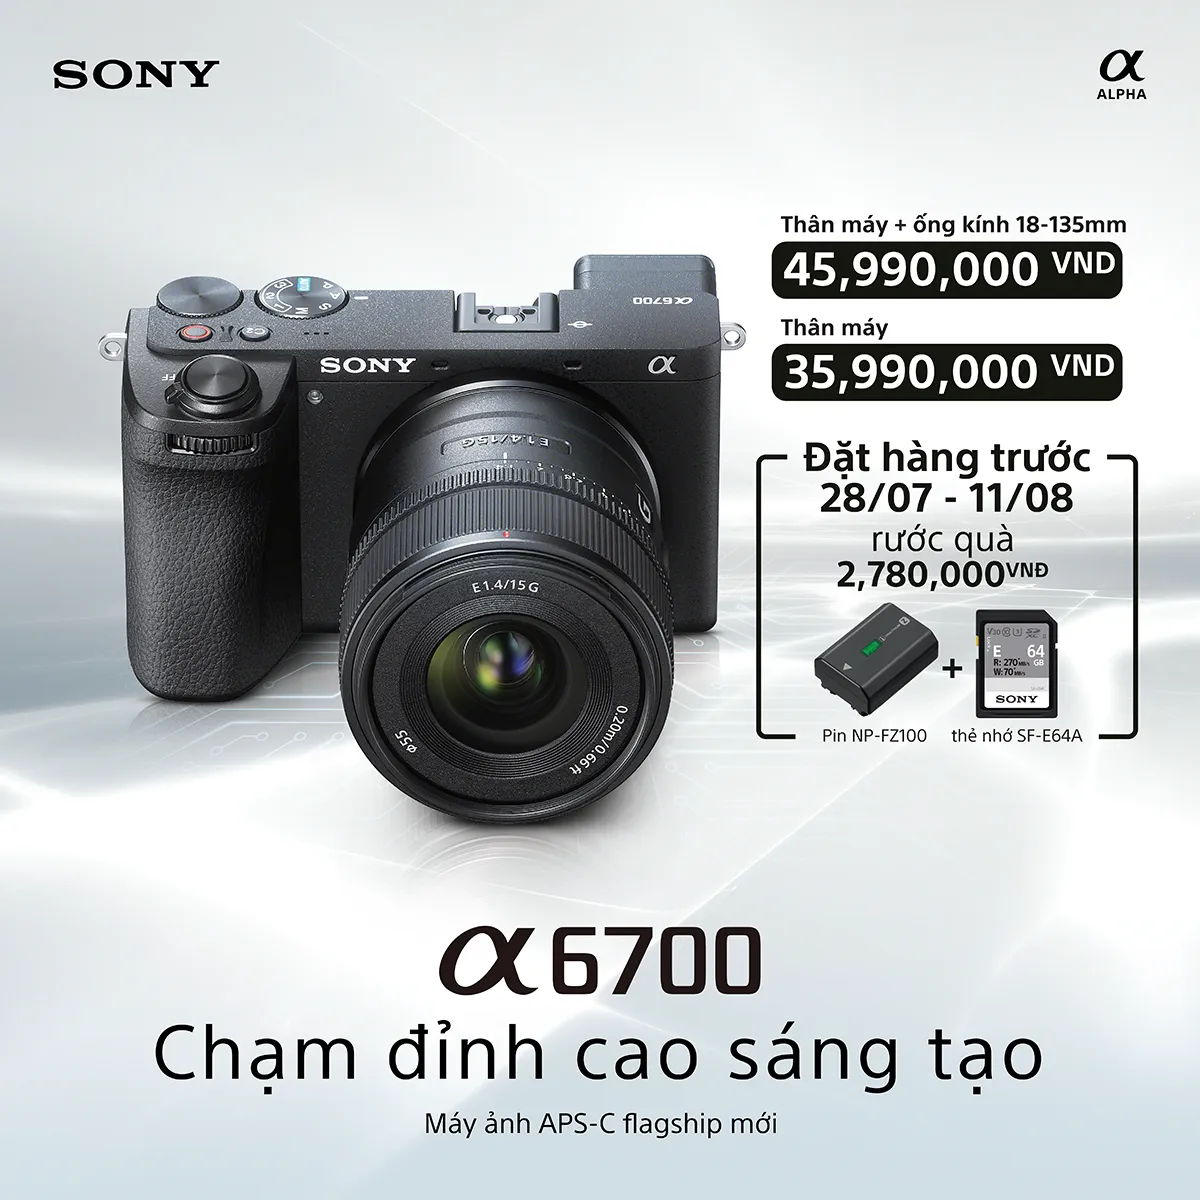 Sony ra mắt máy ảnh APS-C thế hệ mới a6700 tại Việt Nam, giá 35,990,000 VND